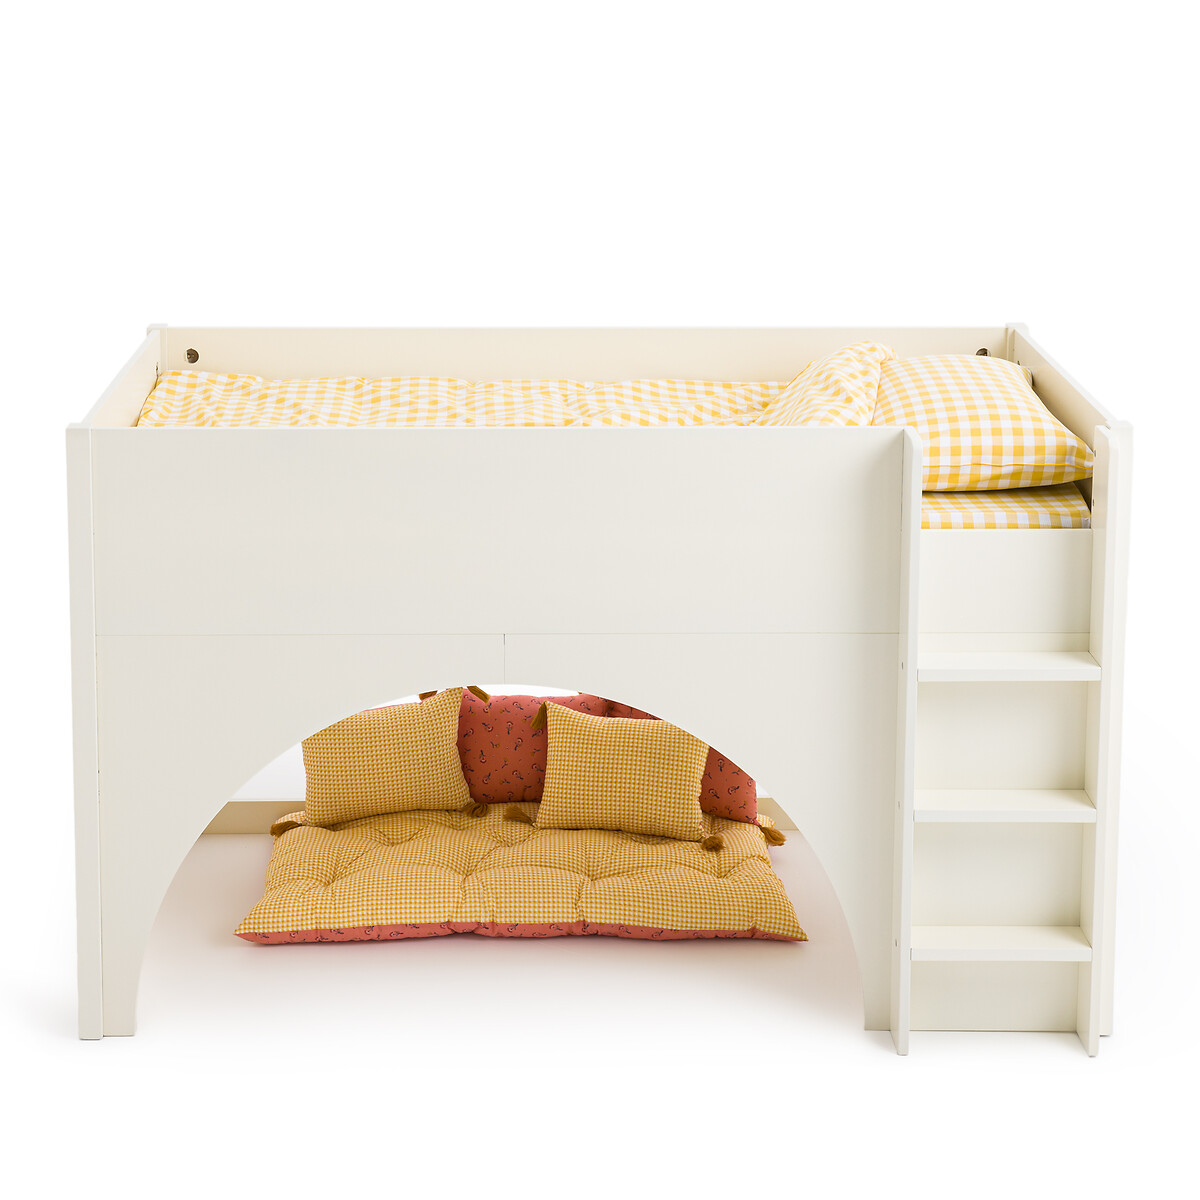 Кровать средней высоты детская Arch  90 x 190 см белый LaRedoute, размер 90 x 190 см